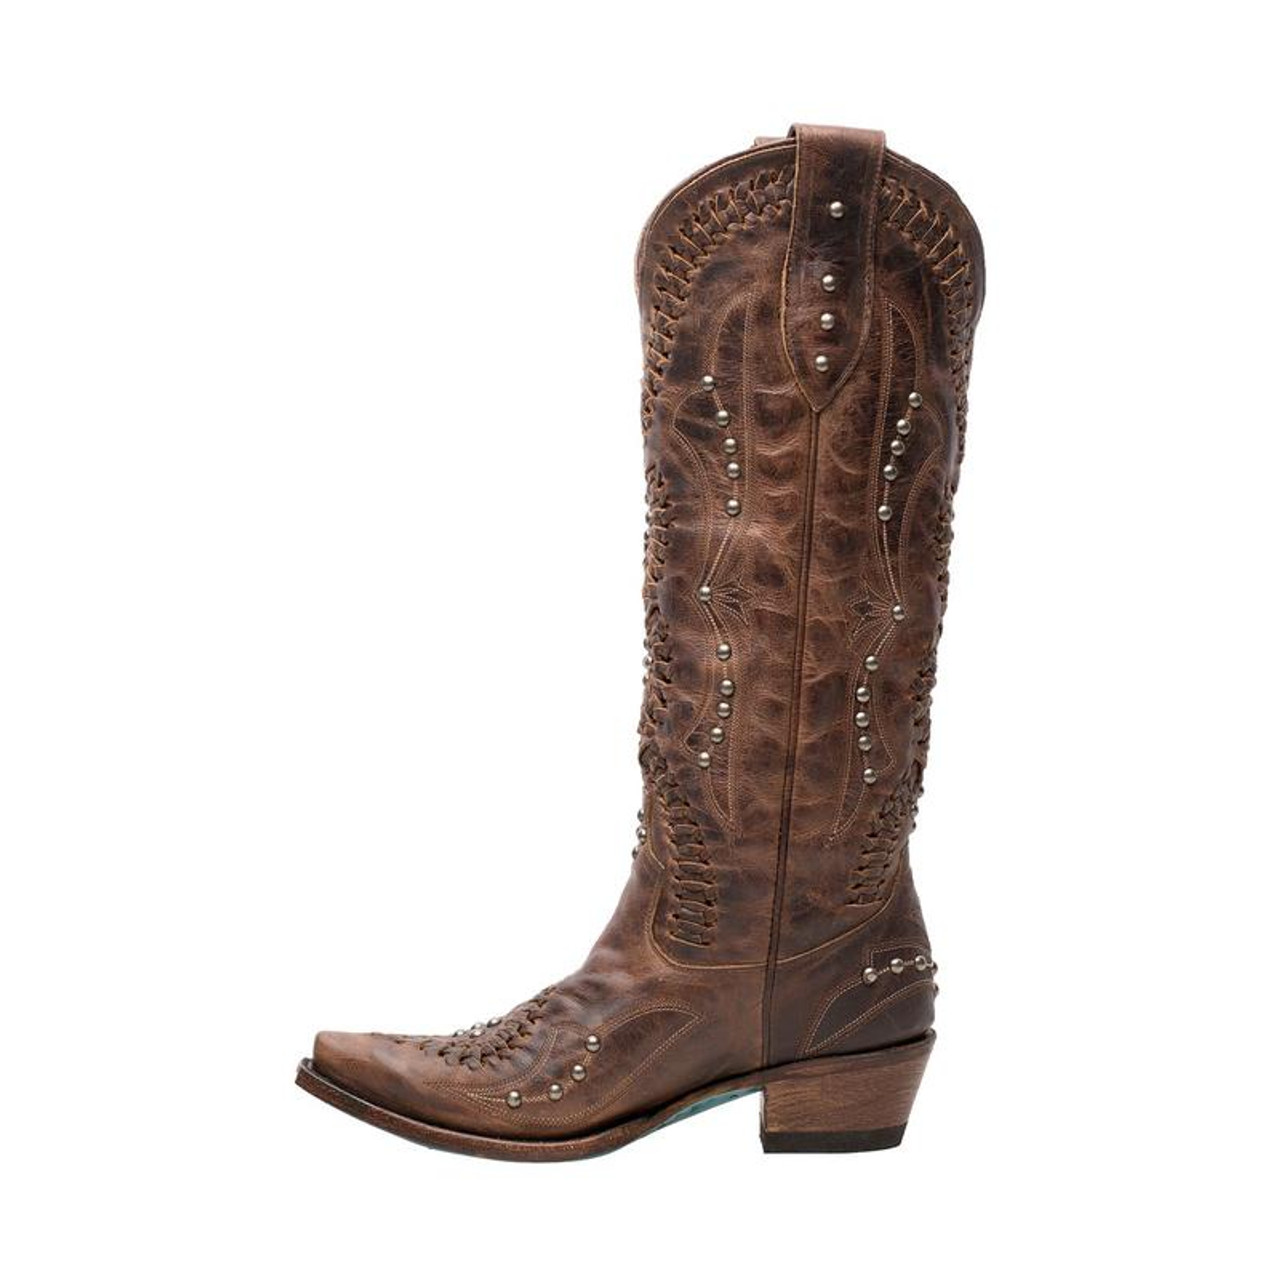 Lane Women's Boots - Cossette / Cognac - Billy's Western Wear